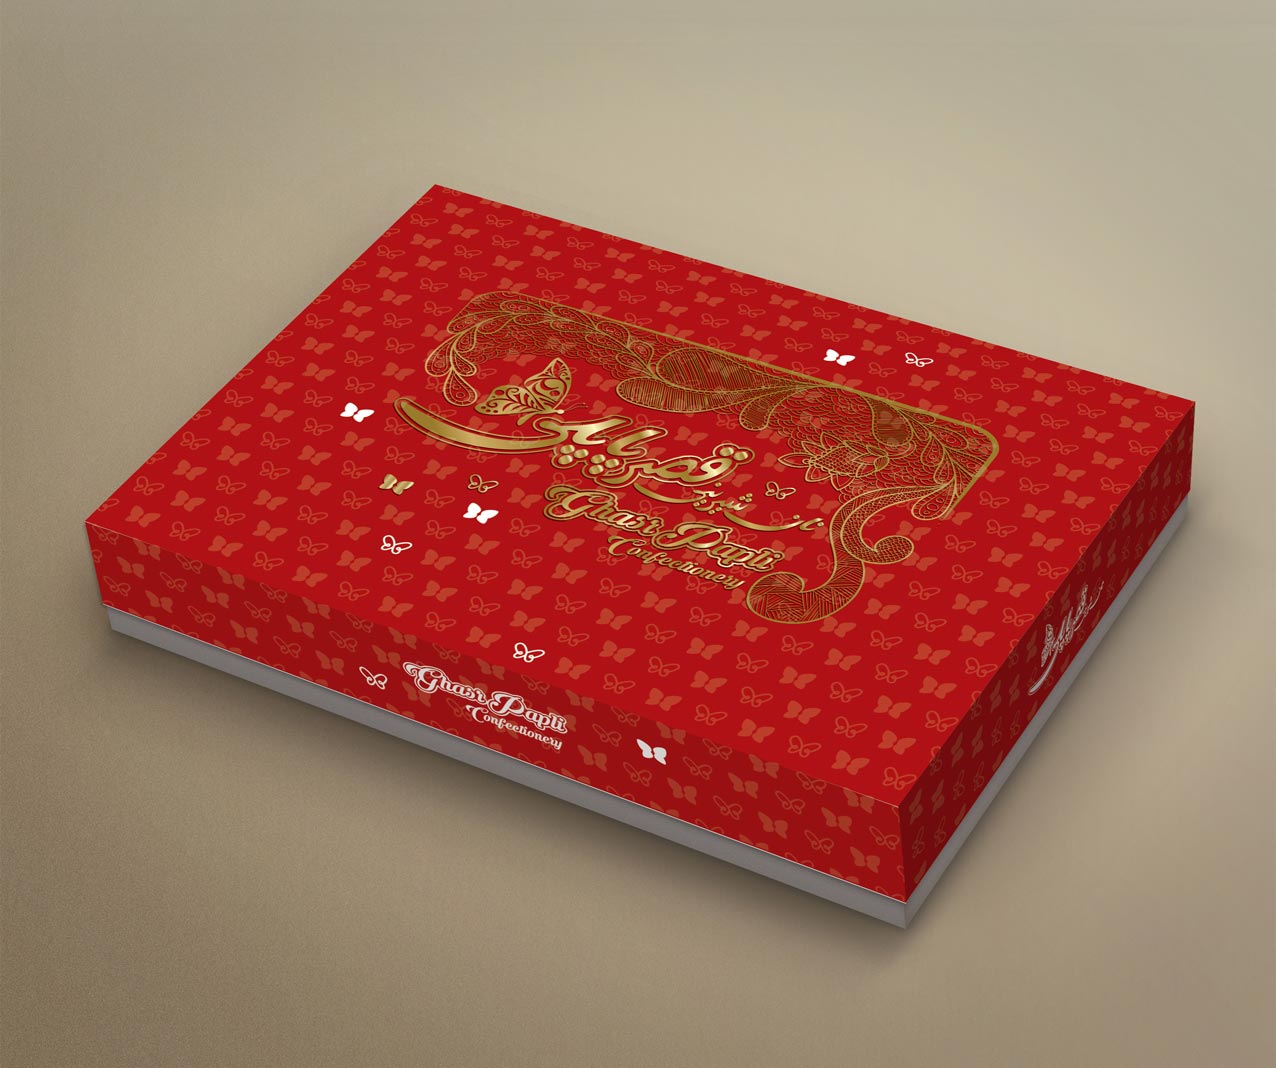 طراحی جعبه شیرینی پاپلی 7